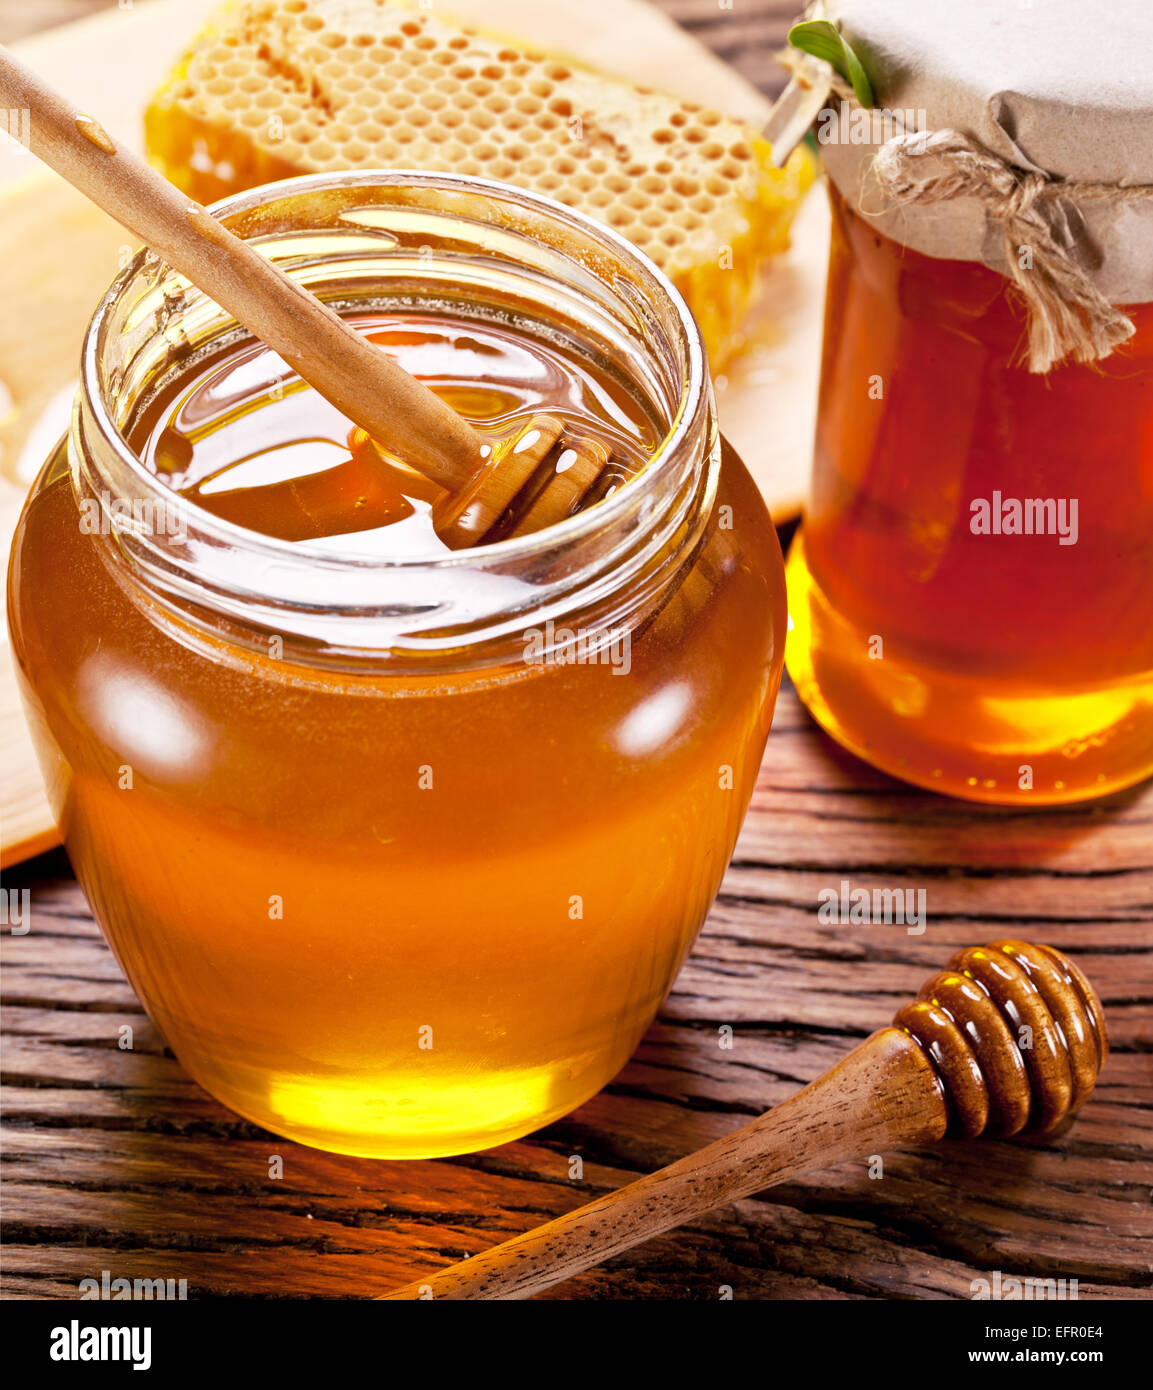 Balancier en bois en verre est plein de miel sur la table en bois. Banque D'Images